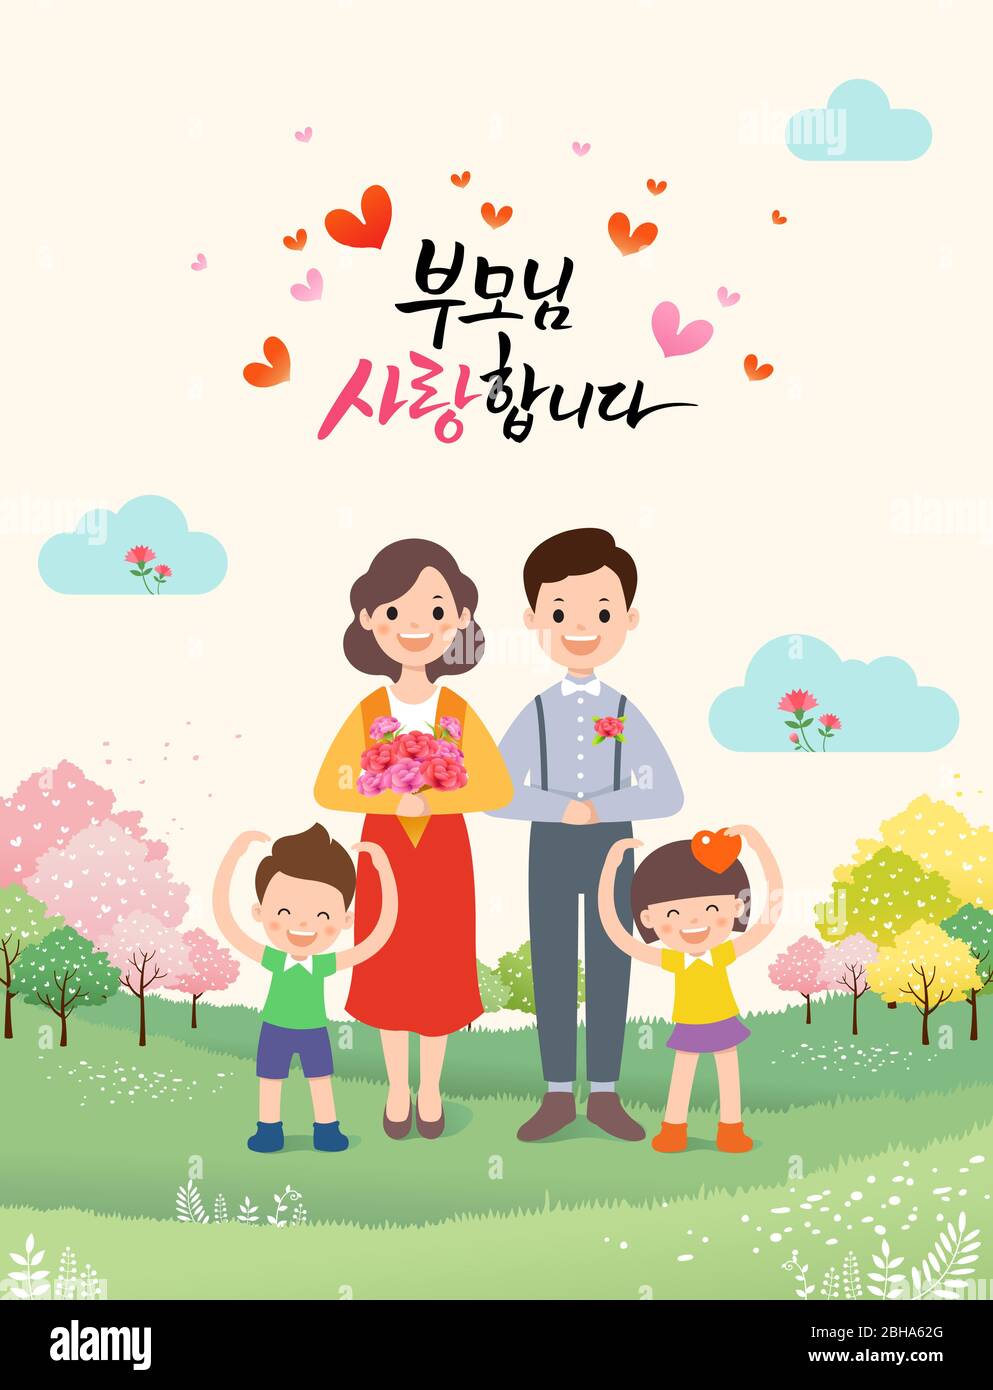 Elterntag, glückliche Familie, Vater, Mutter und Kinder posieren zusammen in der Natur Hintergrund. Eltern, ich liebe dich, Koreanisch Übersetzung. Stock Vektor